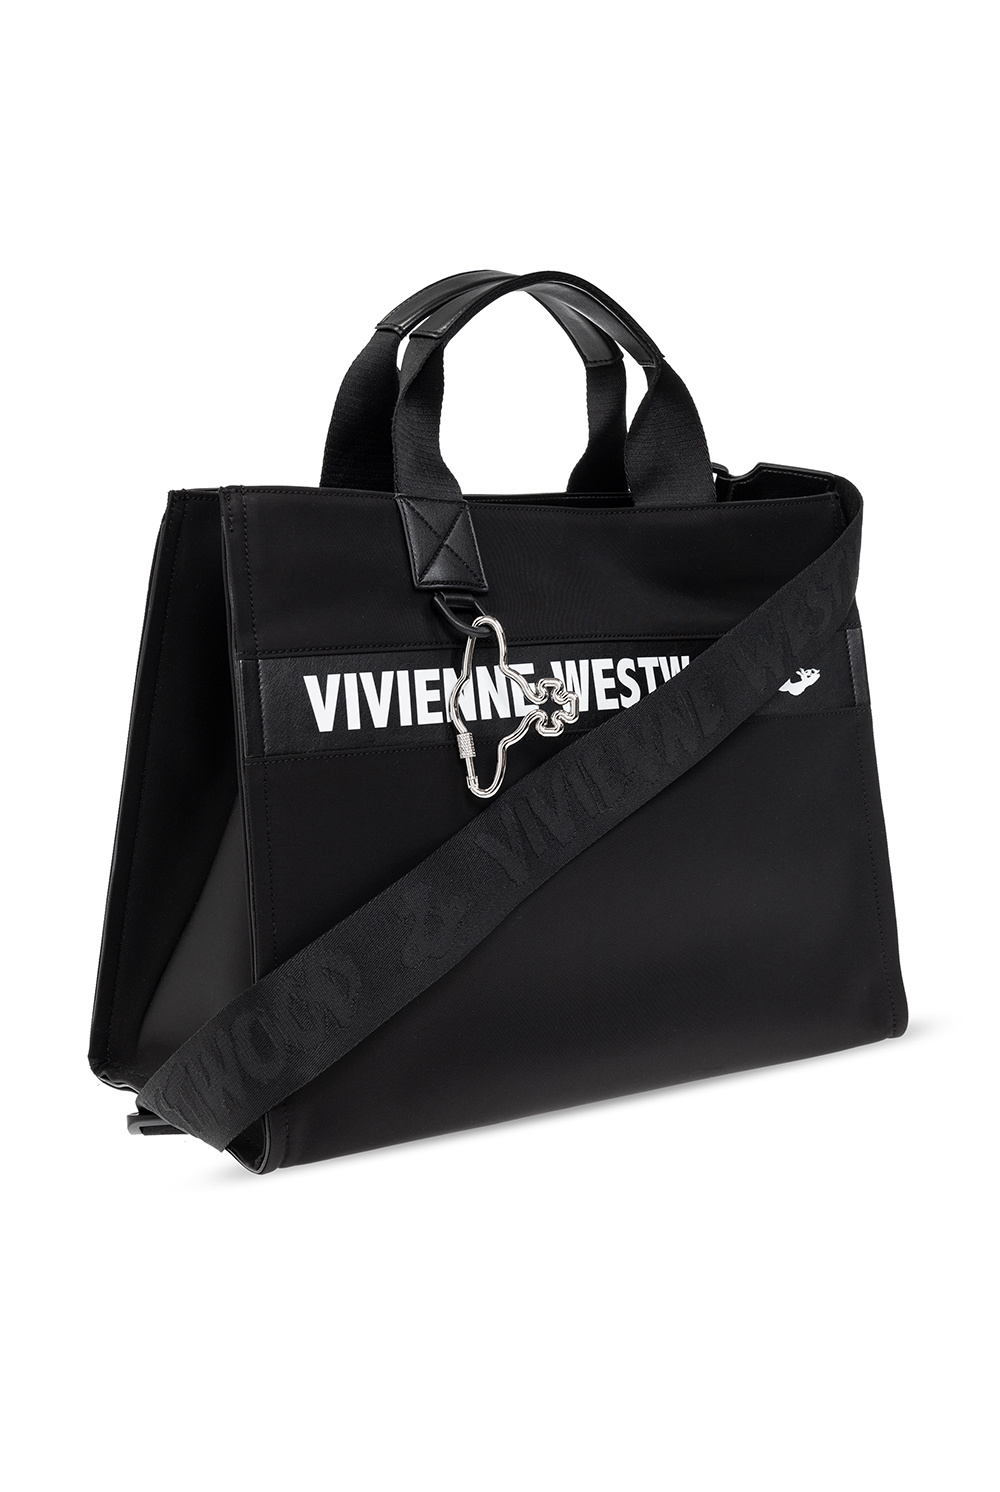 Vivienne Westwood ‘Holborn’ shopper bag